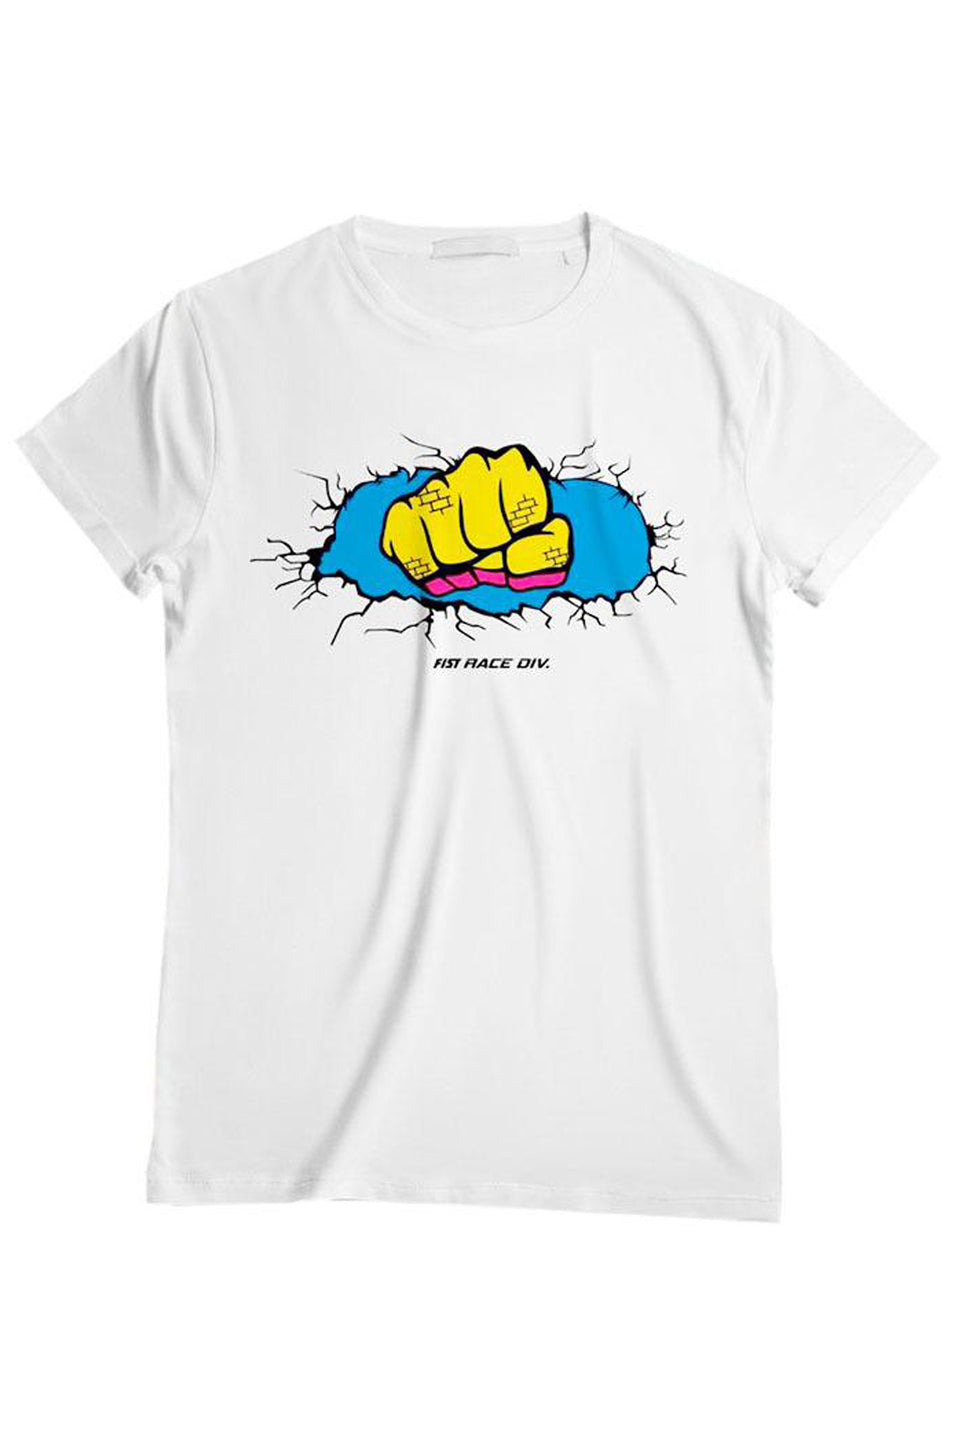 Camiseta Fist Wall